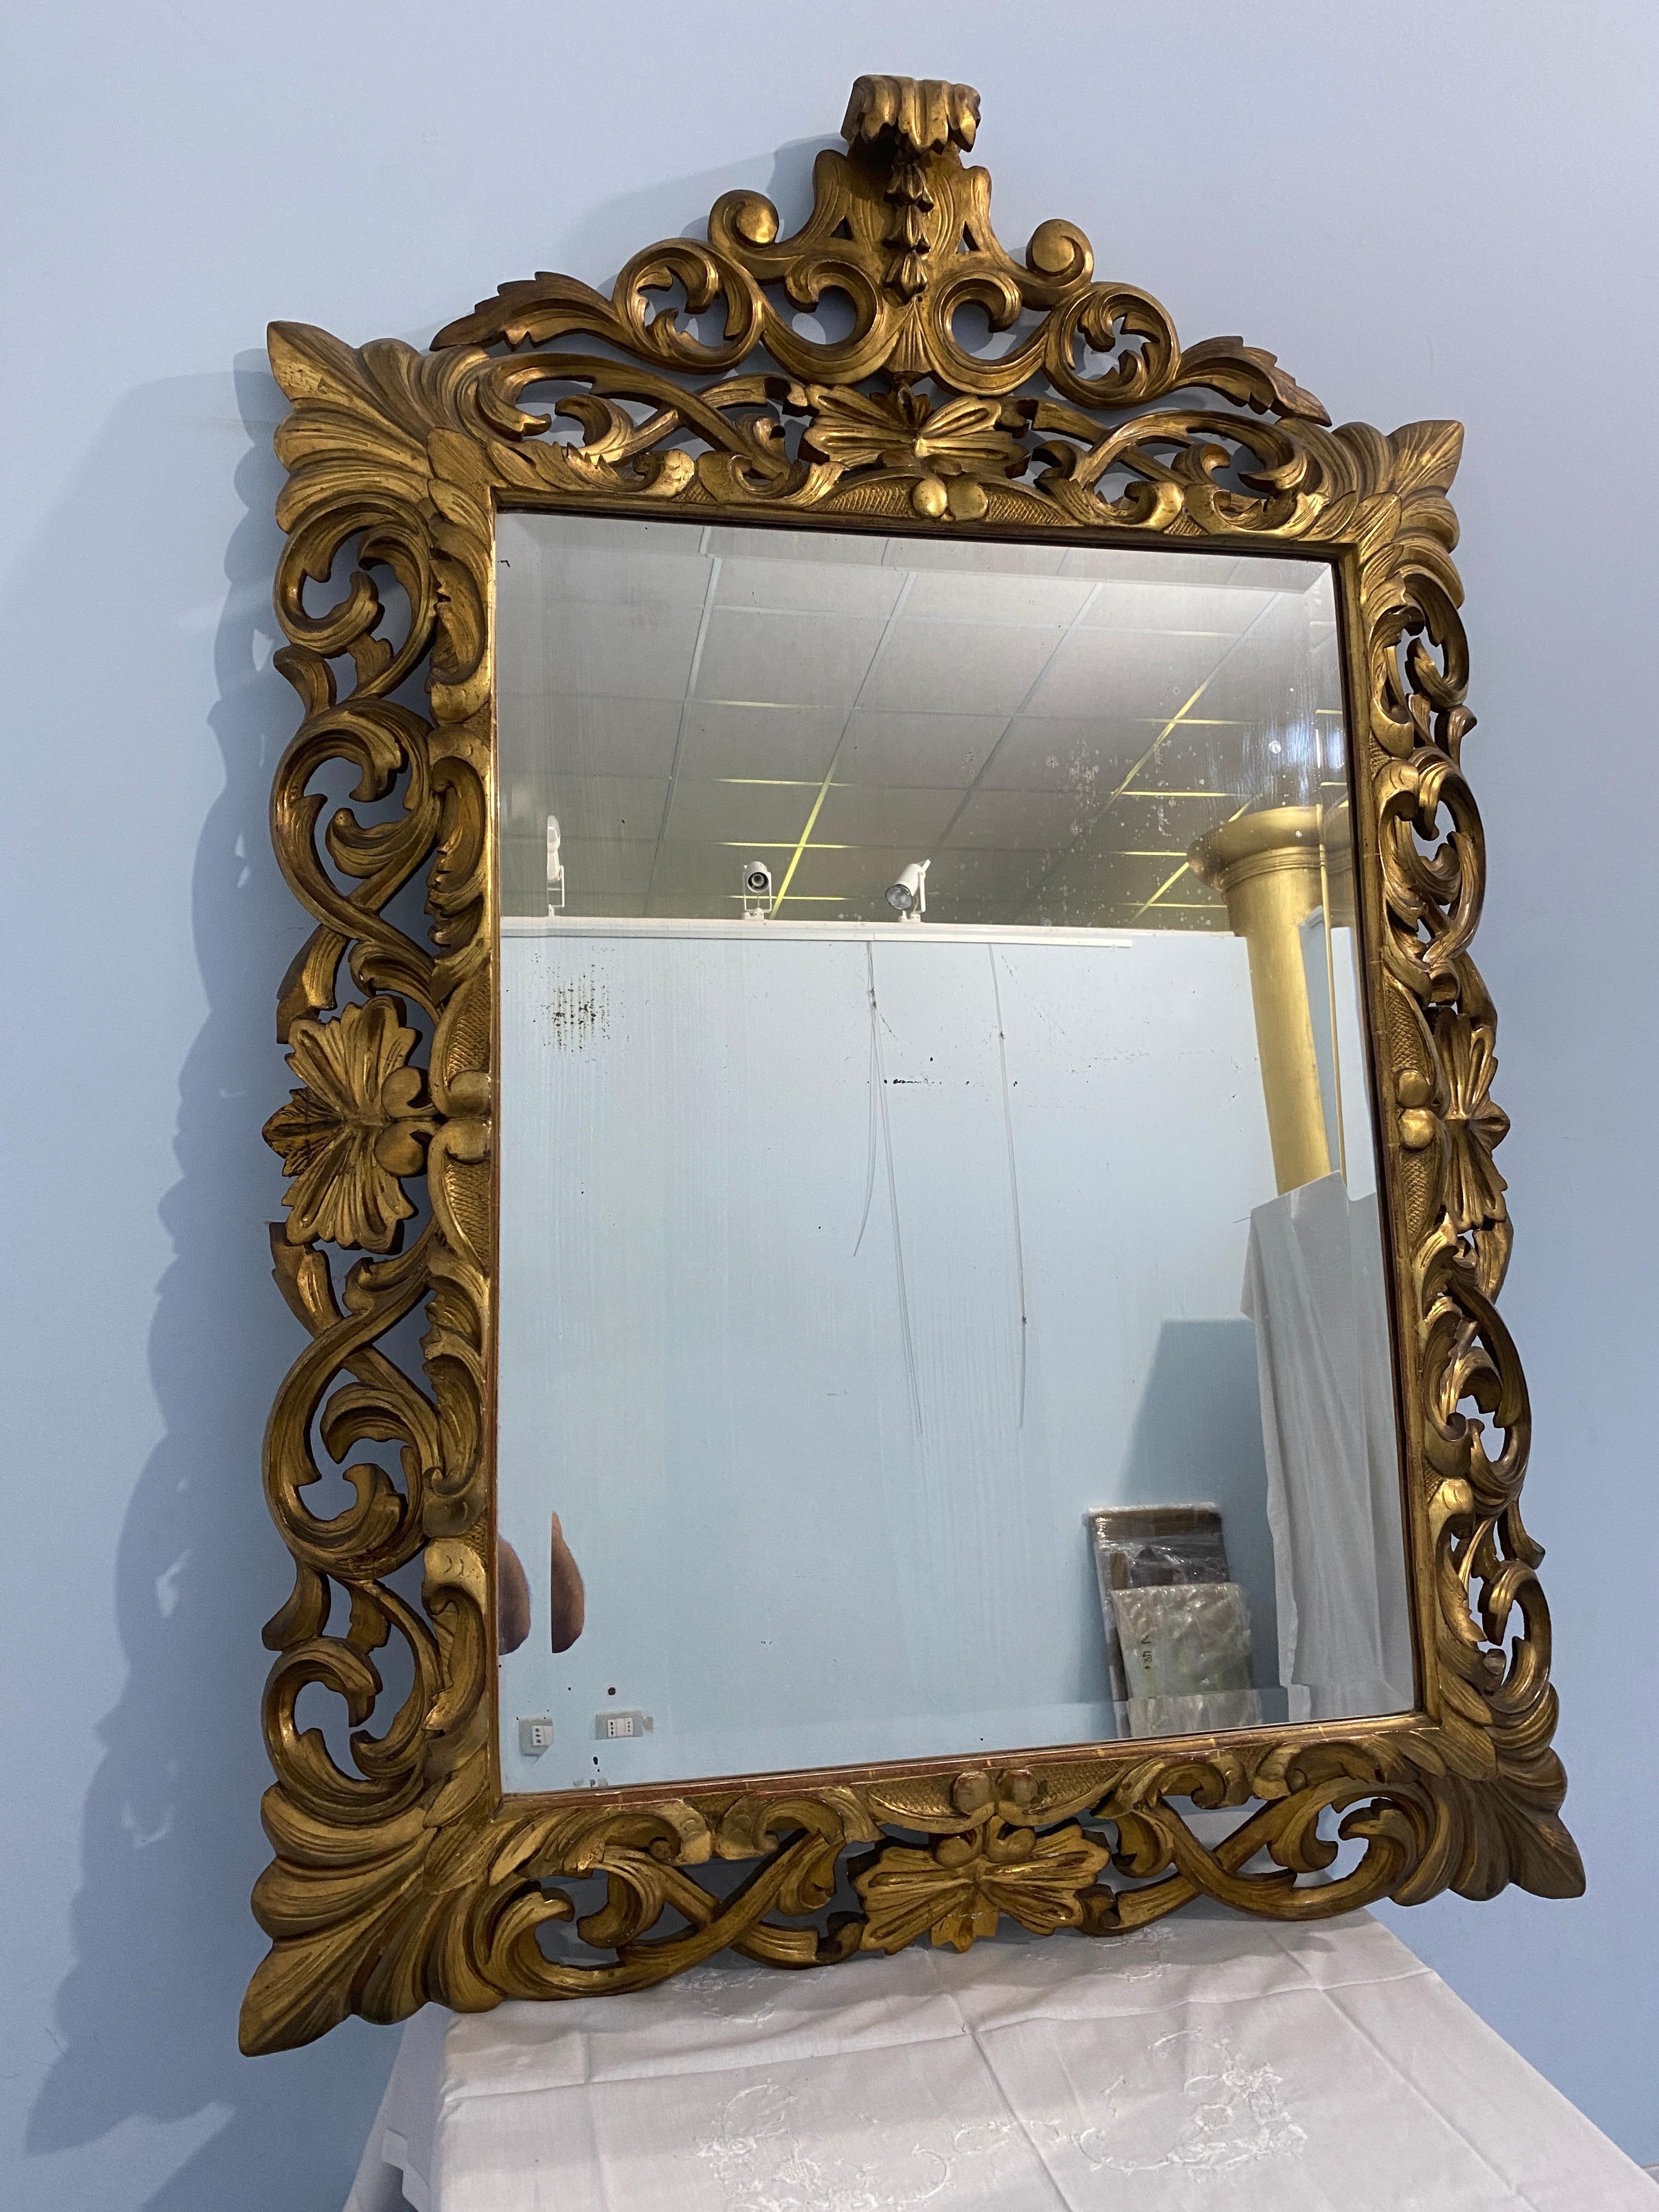 Splendida specchiera antica in legno intagliato dorato a foglia d'oro, con cimasa nella parte superiore. La specchiera a piacere può anche essere appesa in senso verticale in quanto la cimasa si può staccare. Trattasi di uno specchio di grande